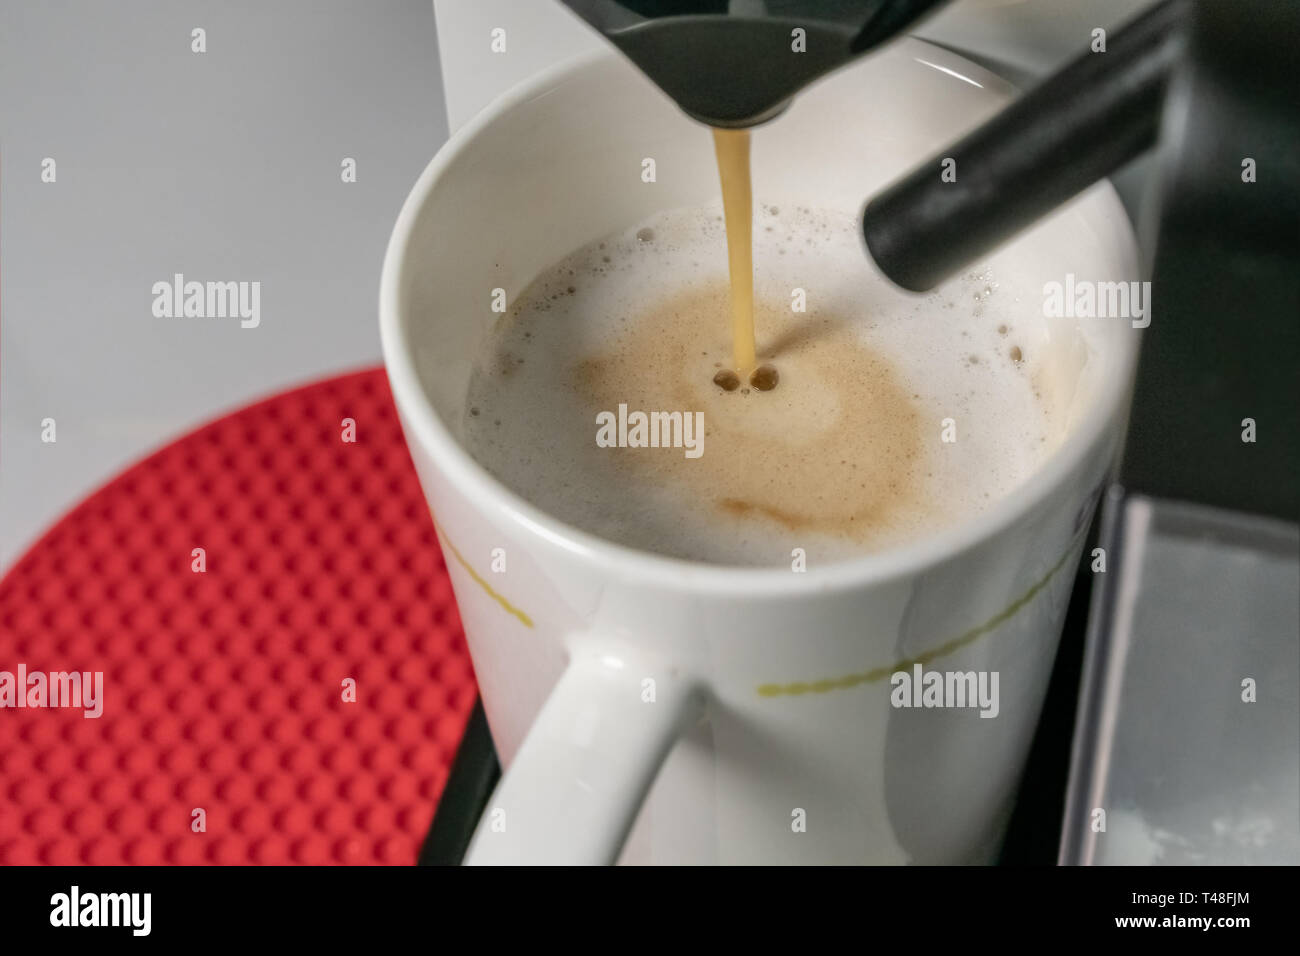 https://c8.alamy.com/compes/t48fjm/hacer-capuchino-vista-de-cerca-de-colada-de-maquina-de-cafe-espresso-cuppuccino-tiene-los-ingredientes-principales-son-el-espresso-y-la-leche-borroso-t48fjm.jpg